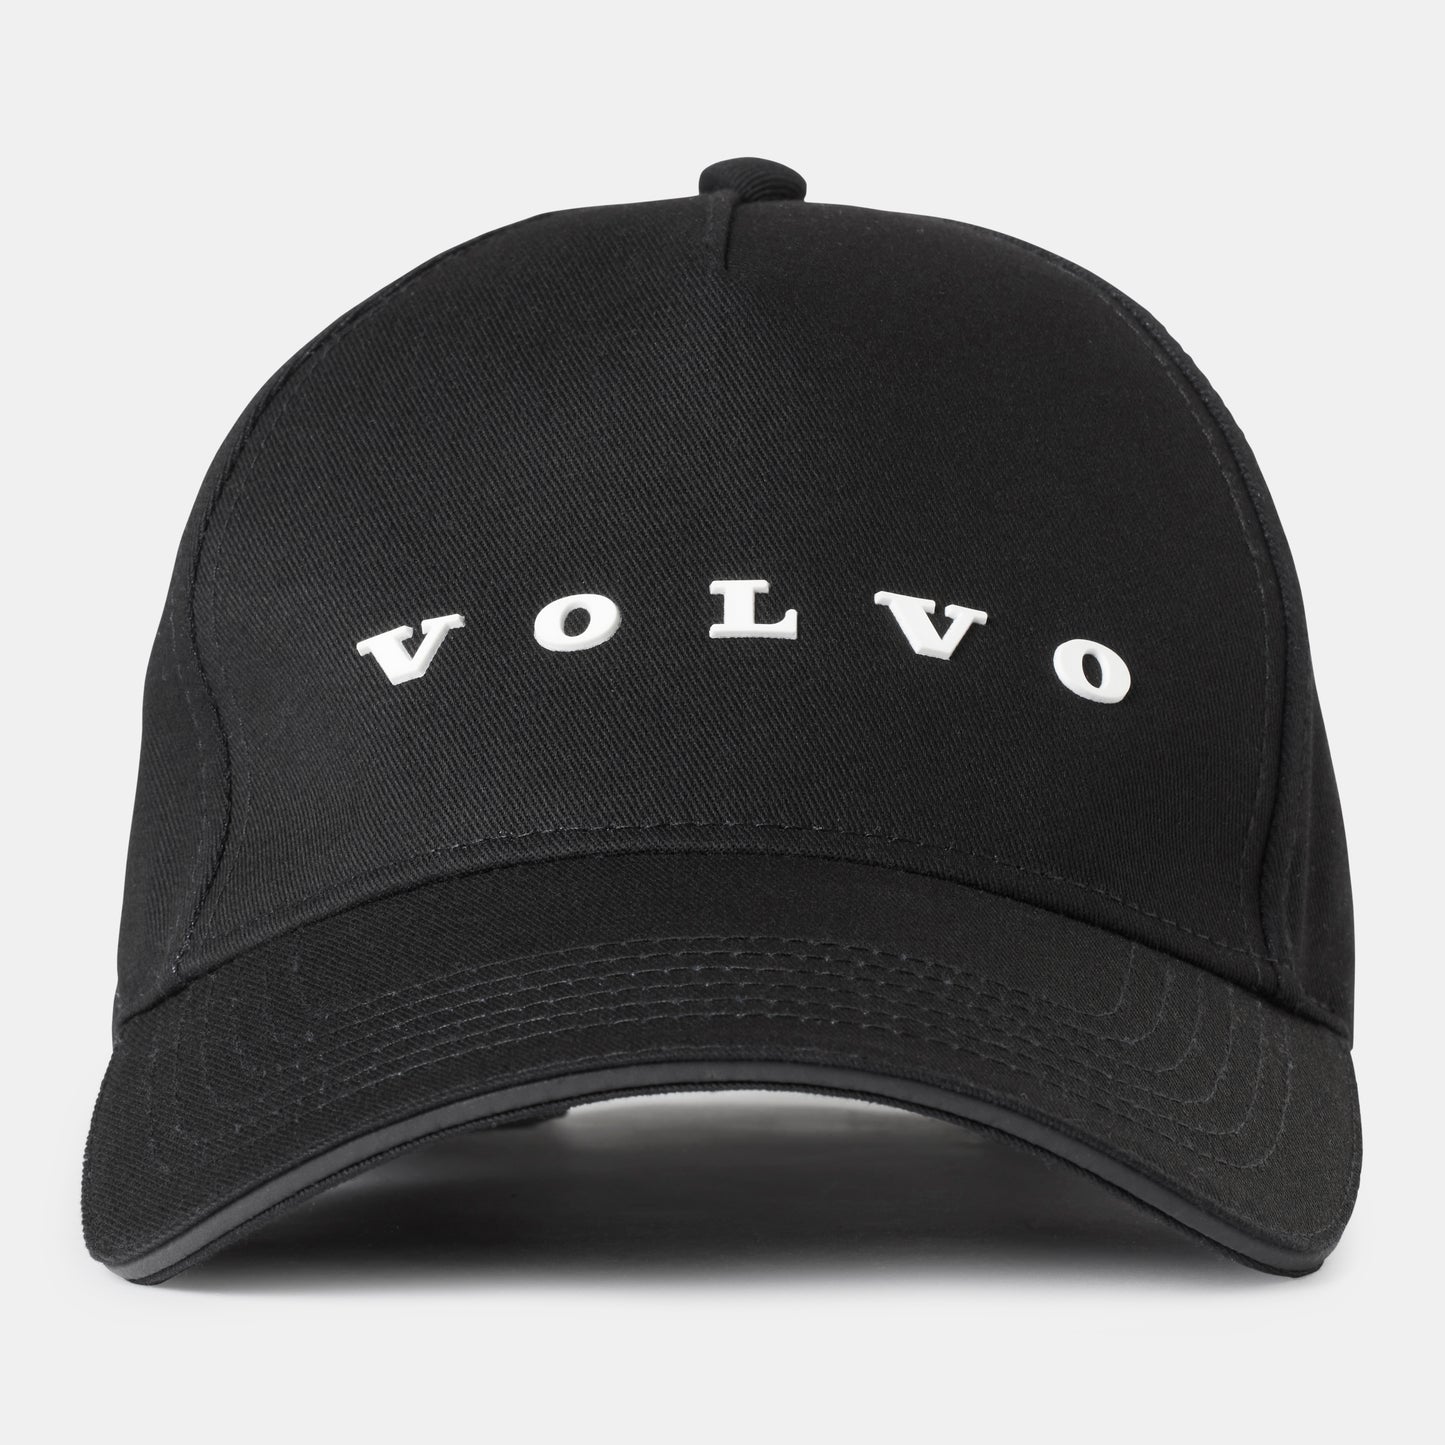 Volvo Cap